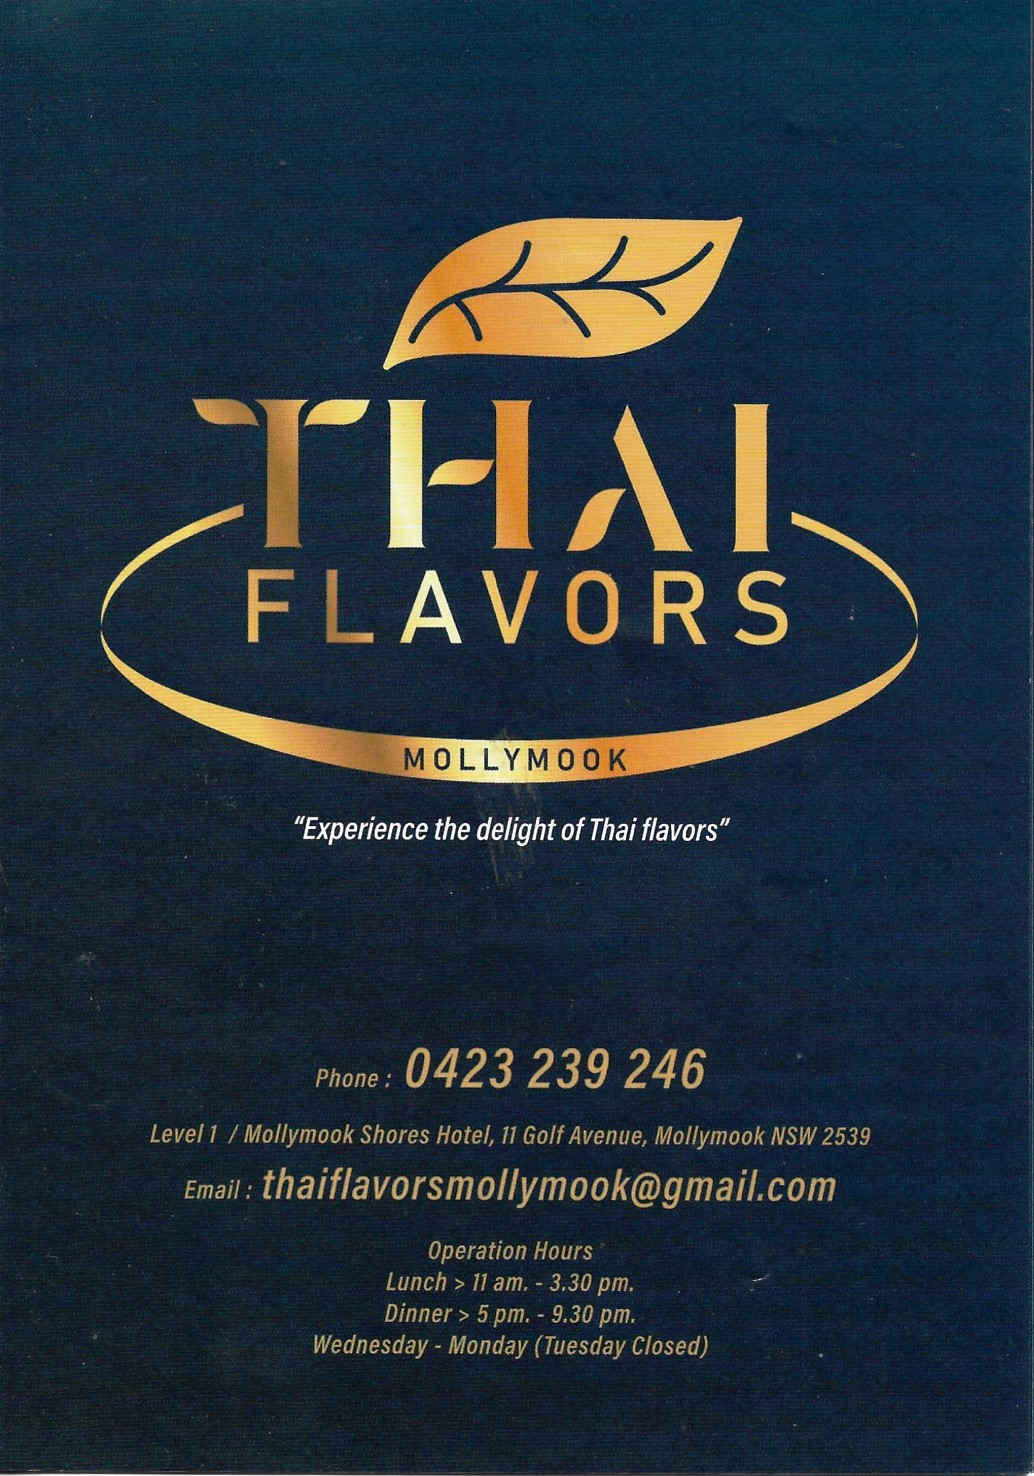 Thai Flavors Mollymook Restaurant,Thai Flavors,Thai Restaurant,mollymook,Asian,restaurant,Mollymook Beach Waterfront